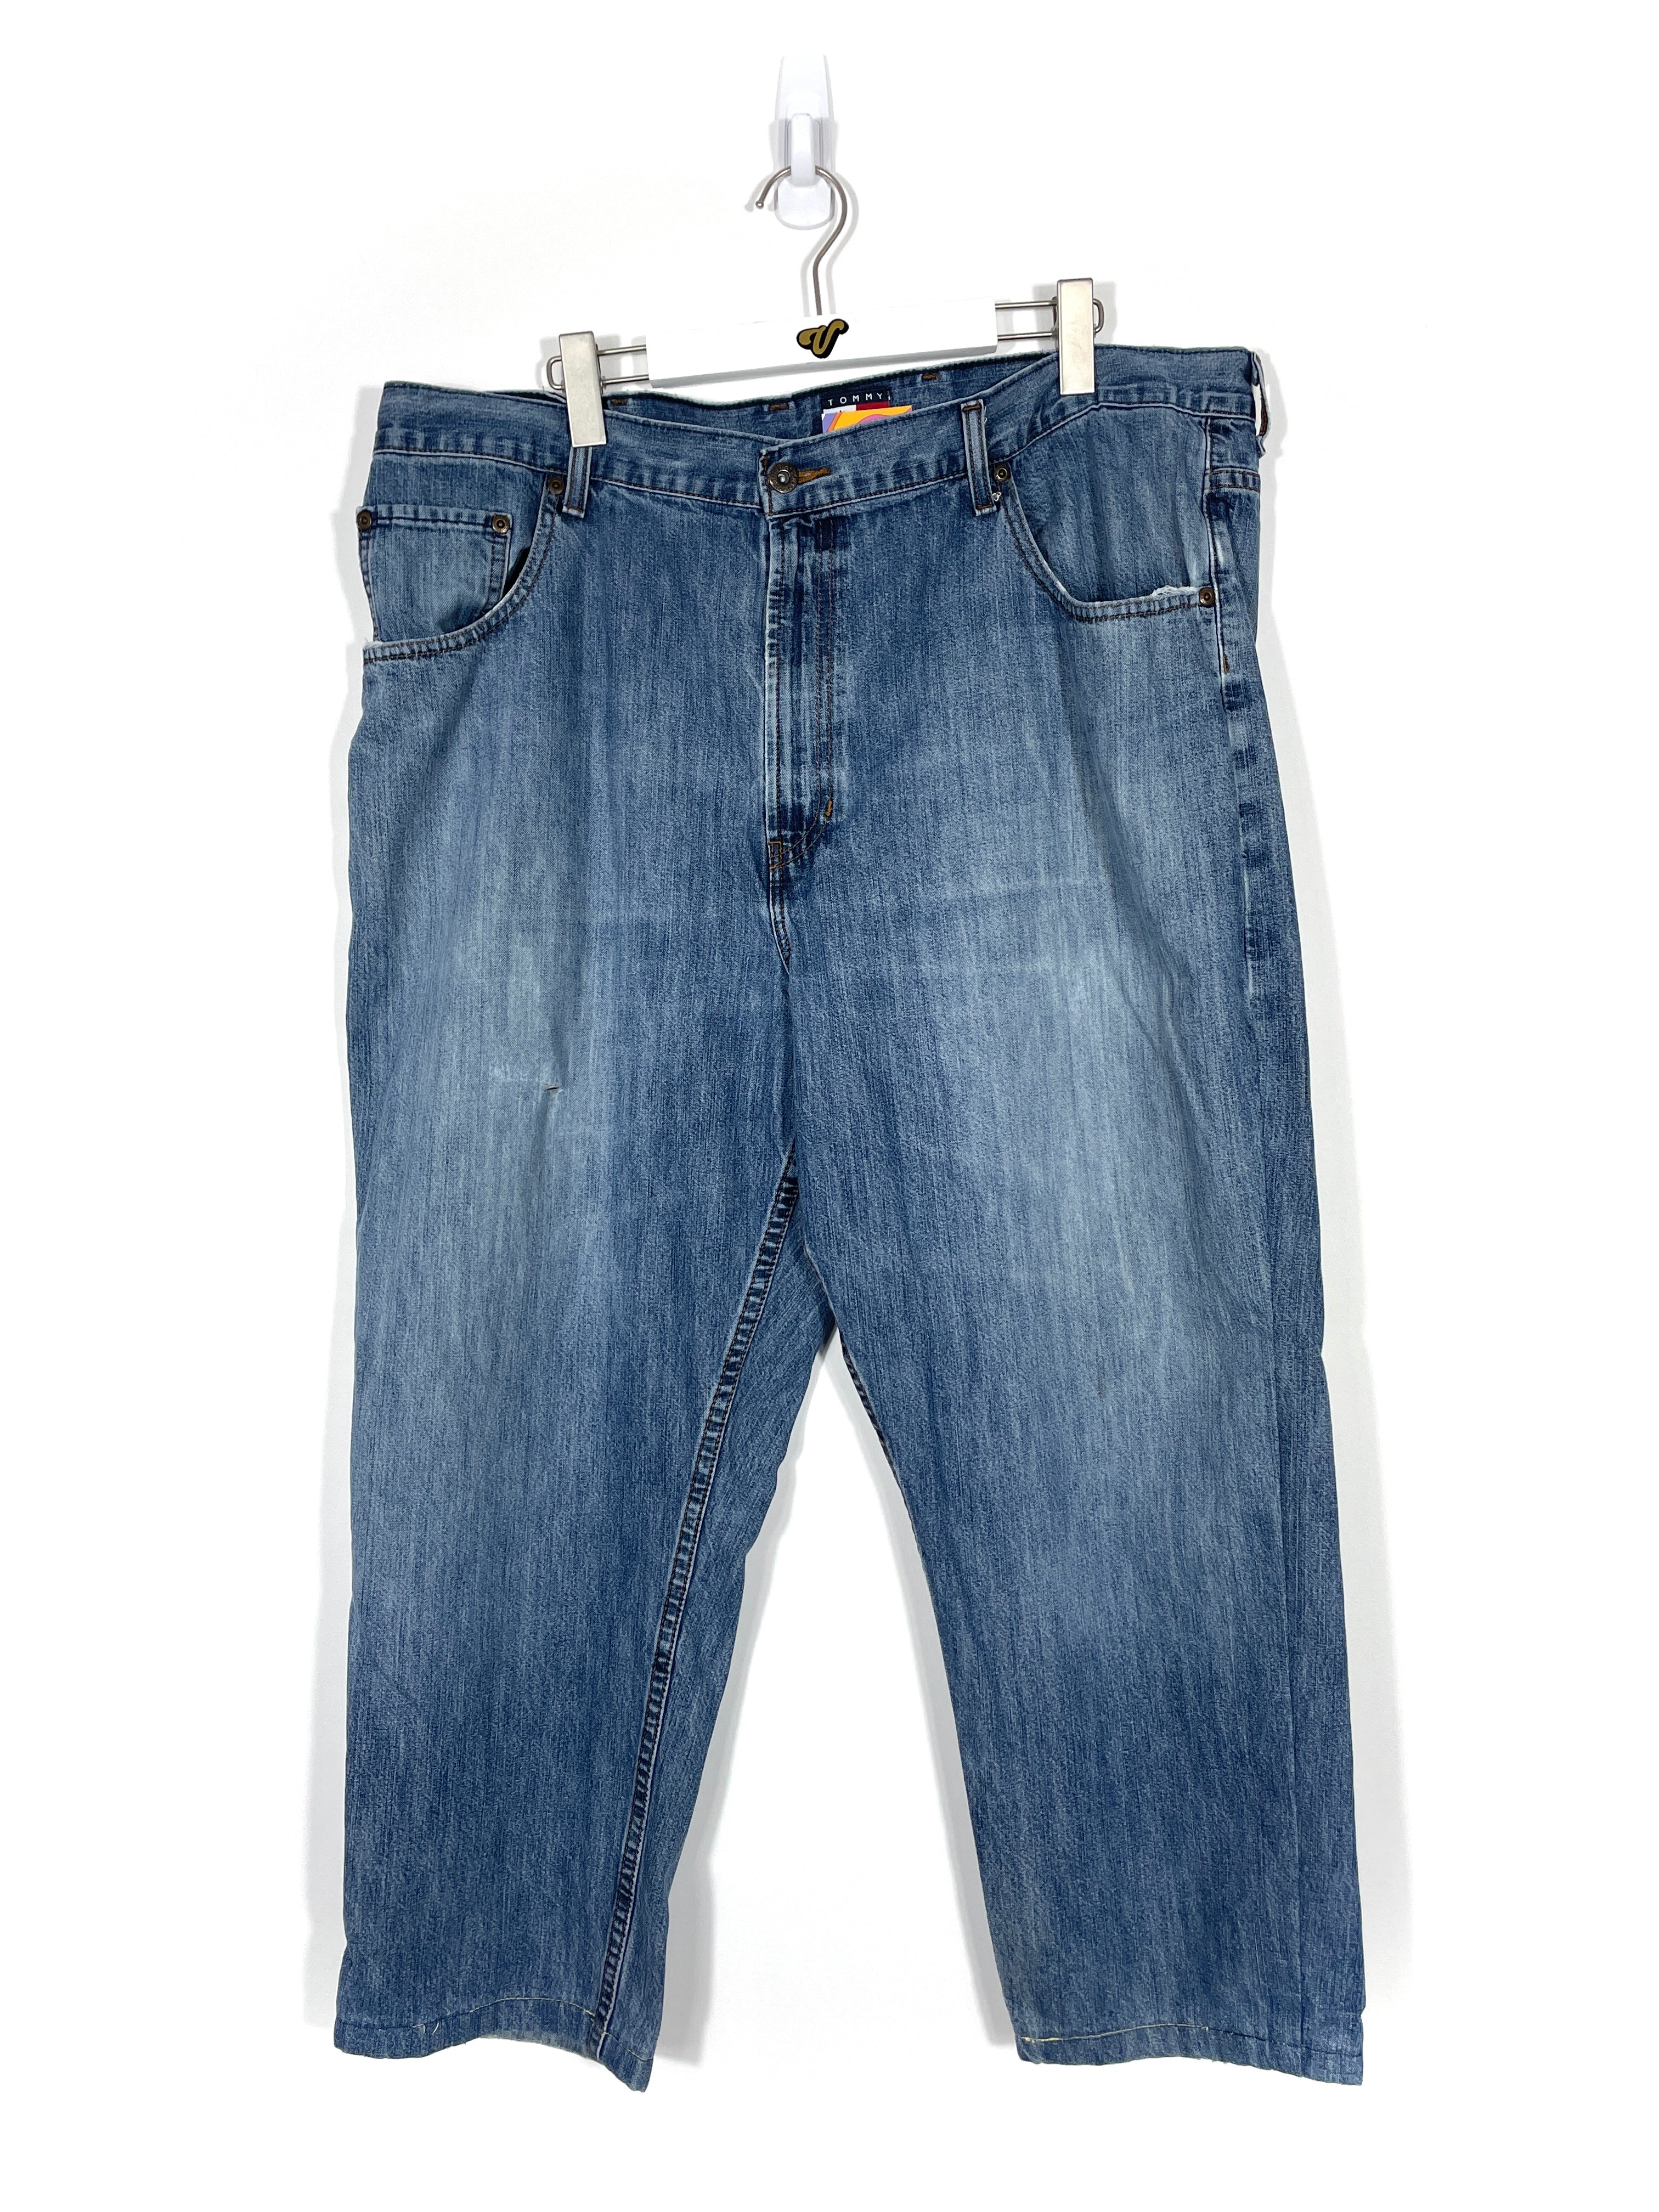 Vintage Tommy Hilfiger Baggy Jeans - Men's 42x32